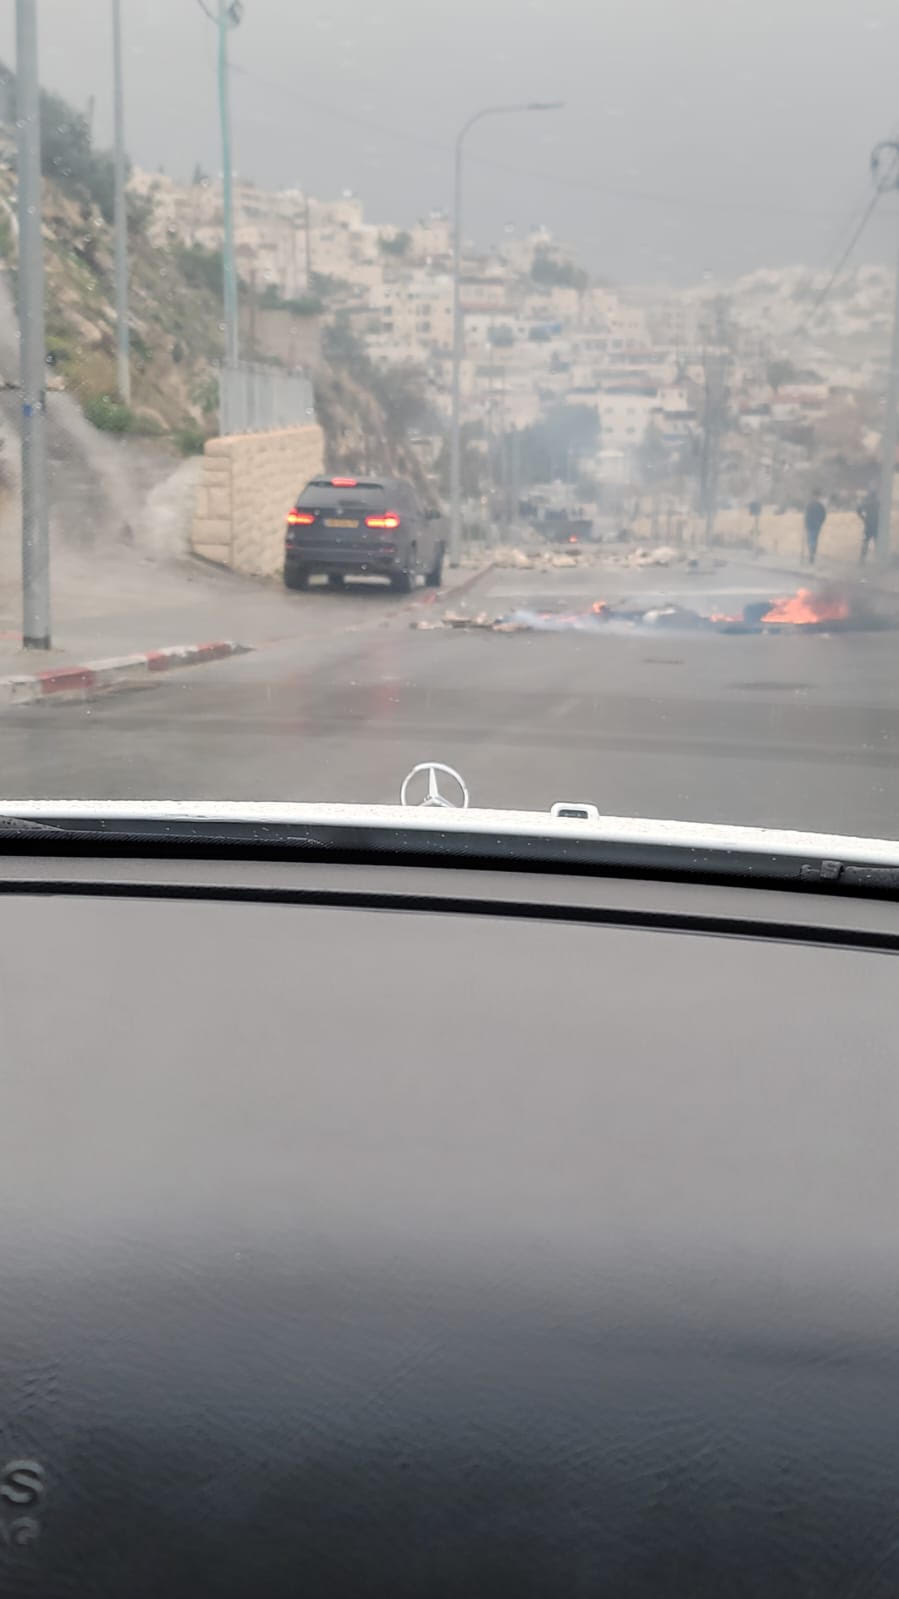 شبان يغلقون شوارع جبل المكبر للتصدي لجرافات الهدم